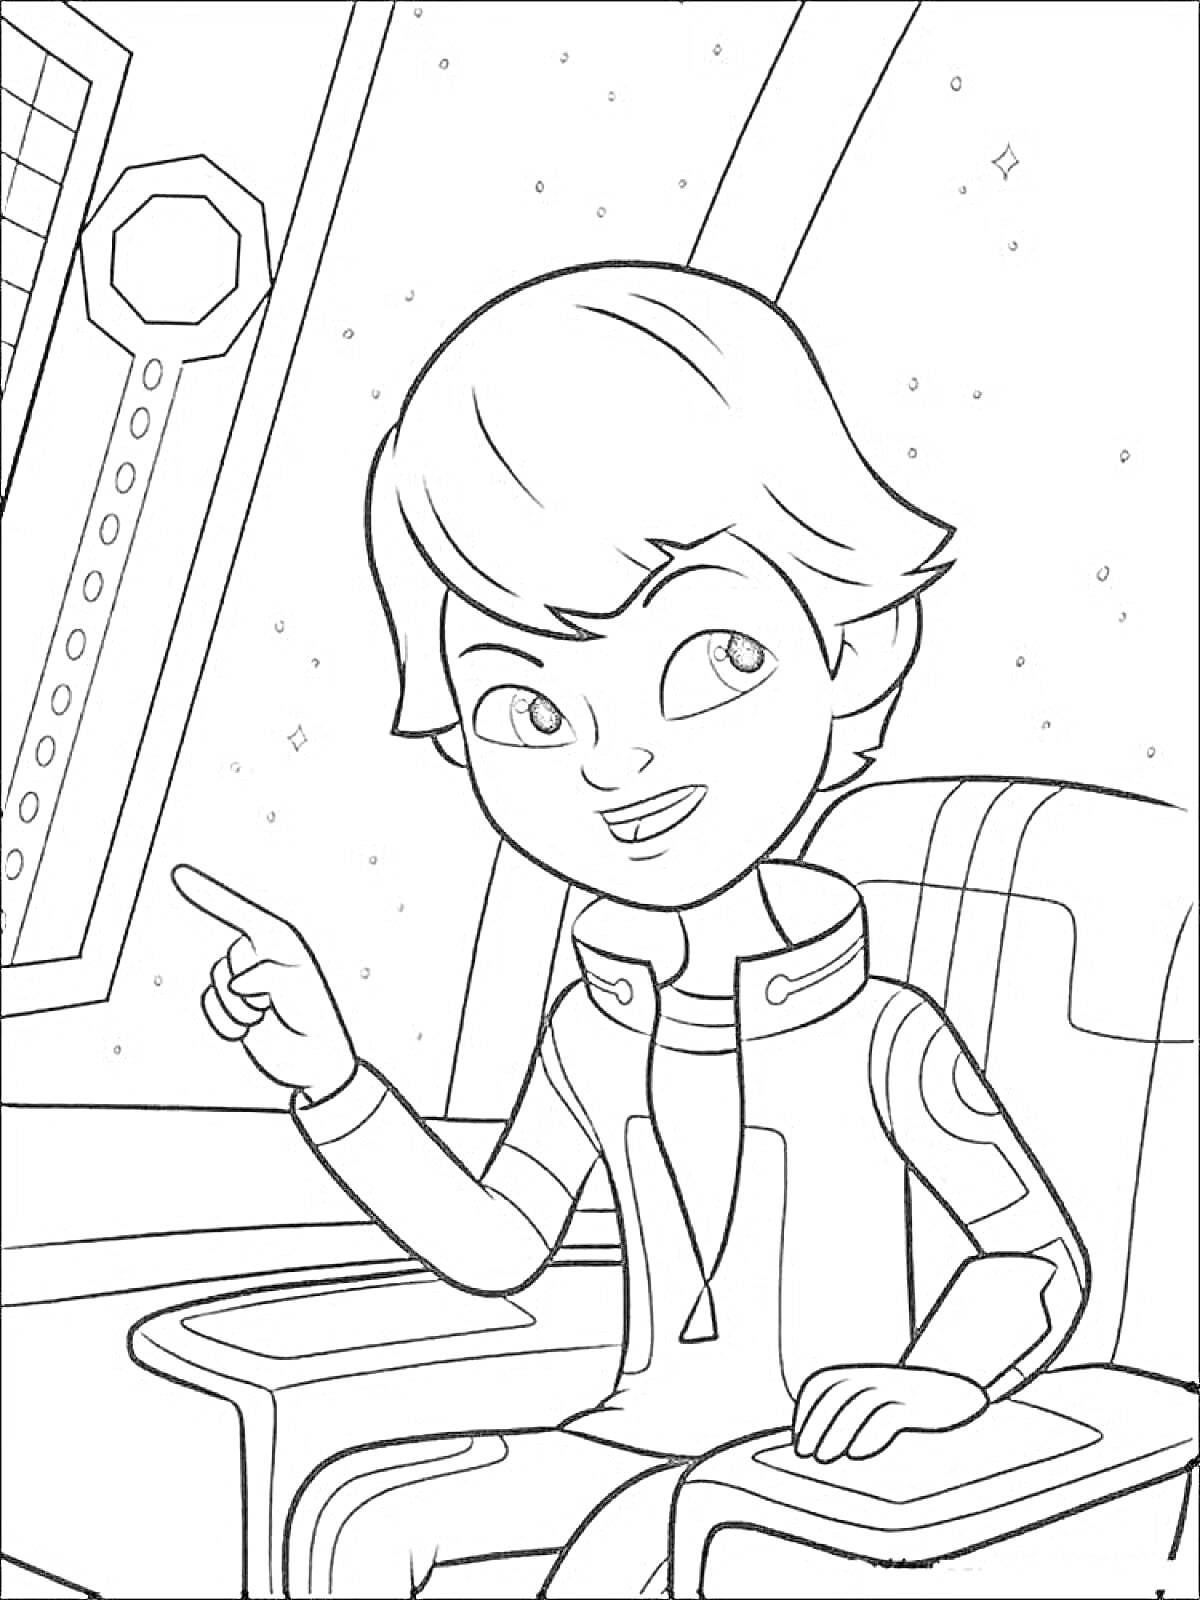 Раскраска мальчик в космическом костюме на космическом корабле, указывающий рукой на экран